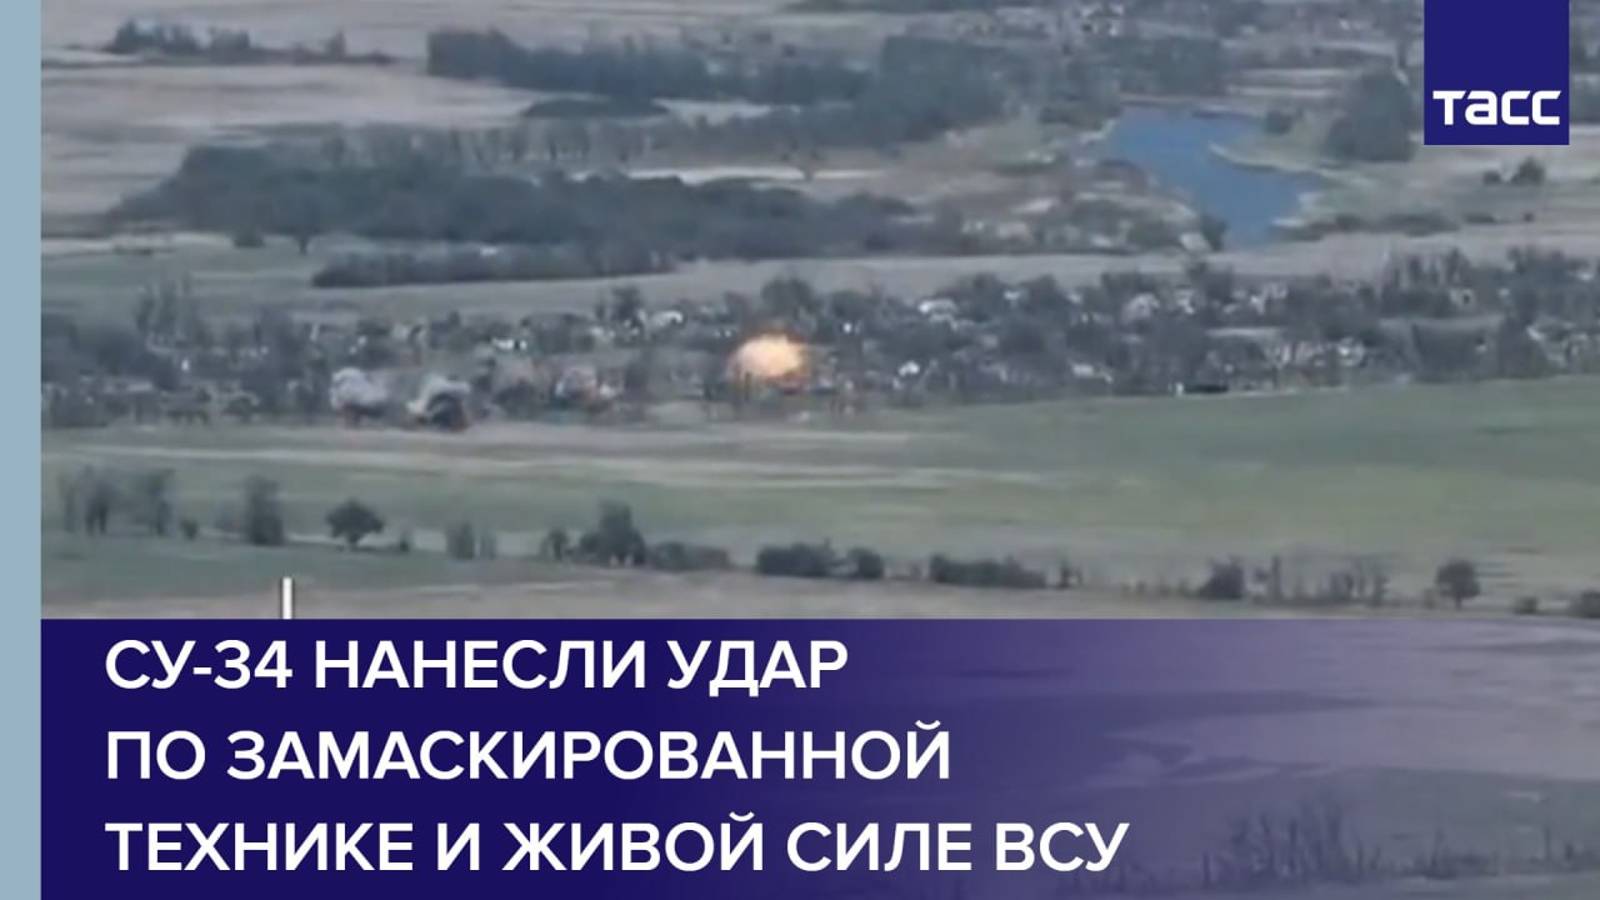 Су-34 нанесли удар по замаскированной технике и живой силе ВСУ